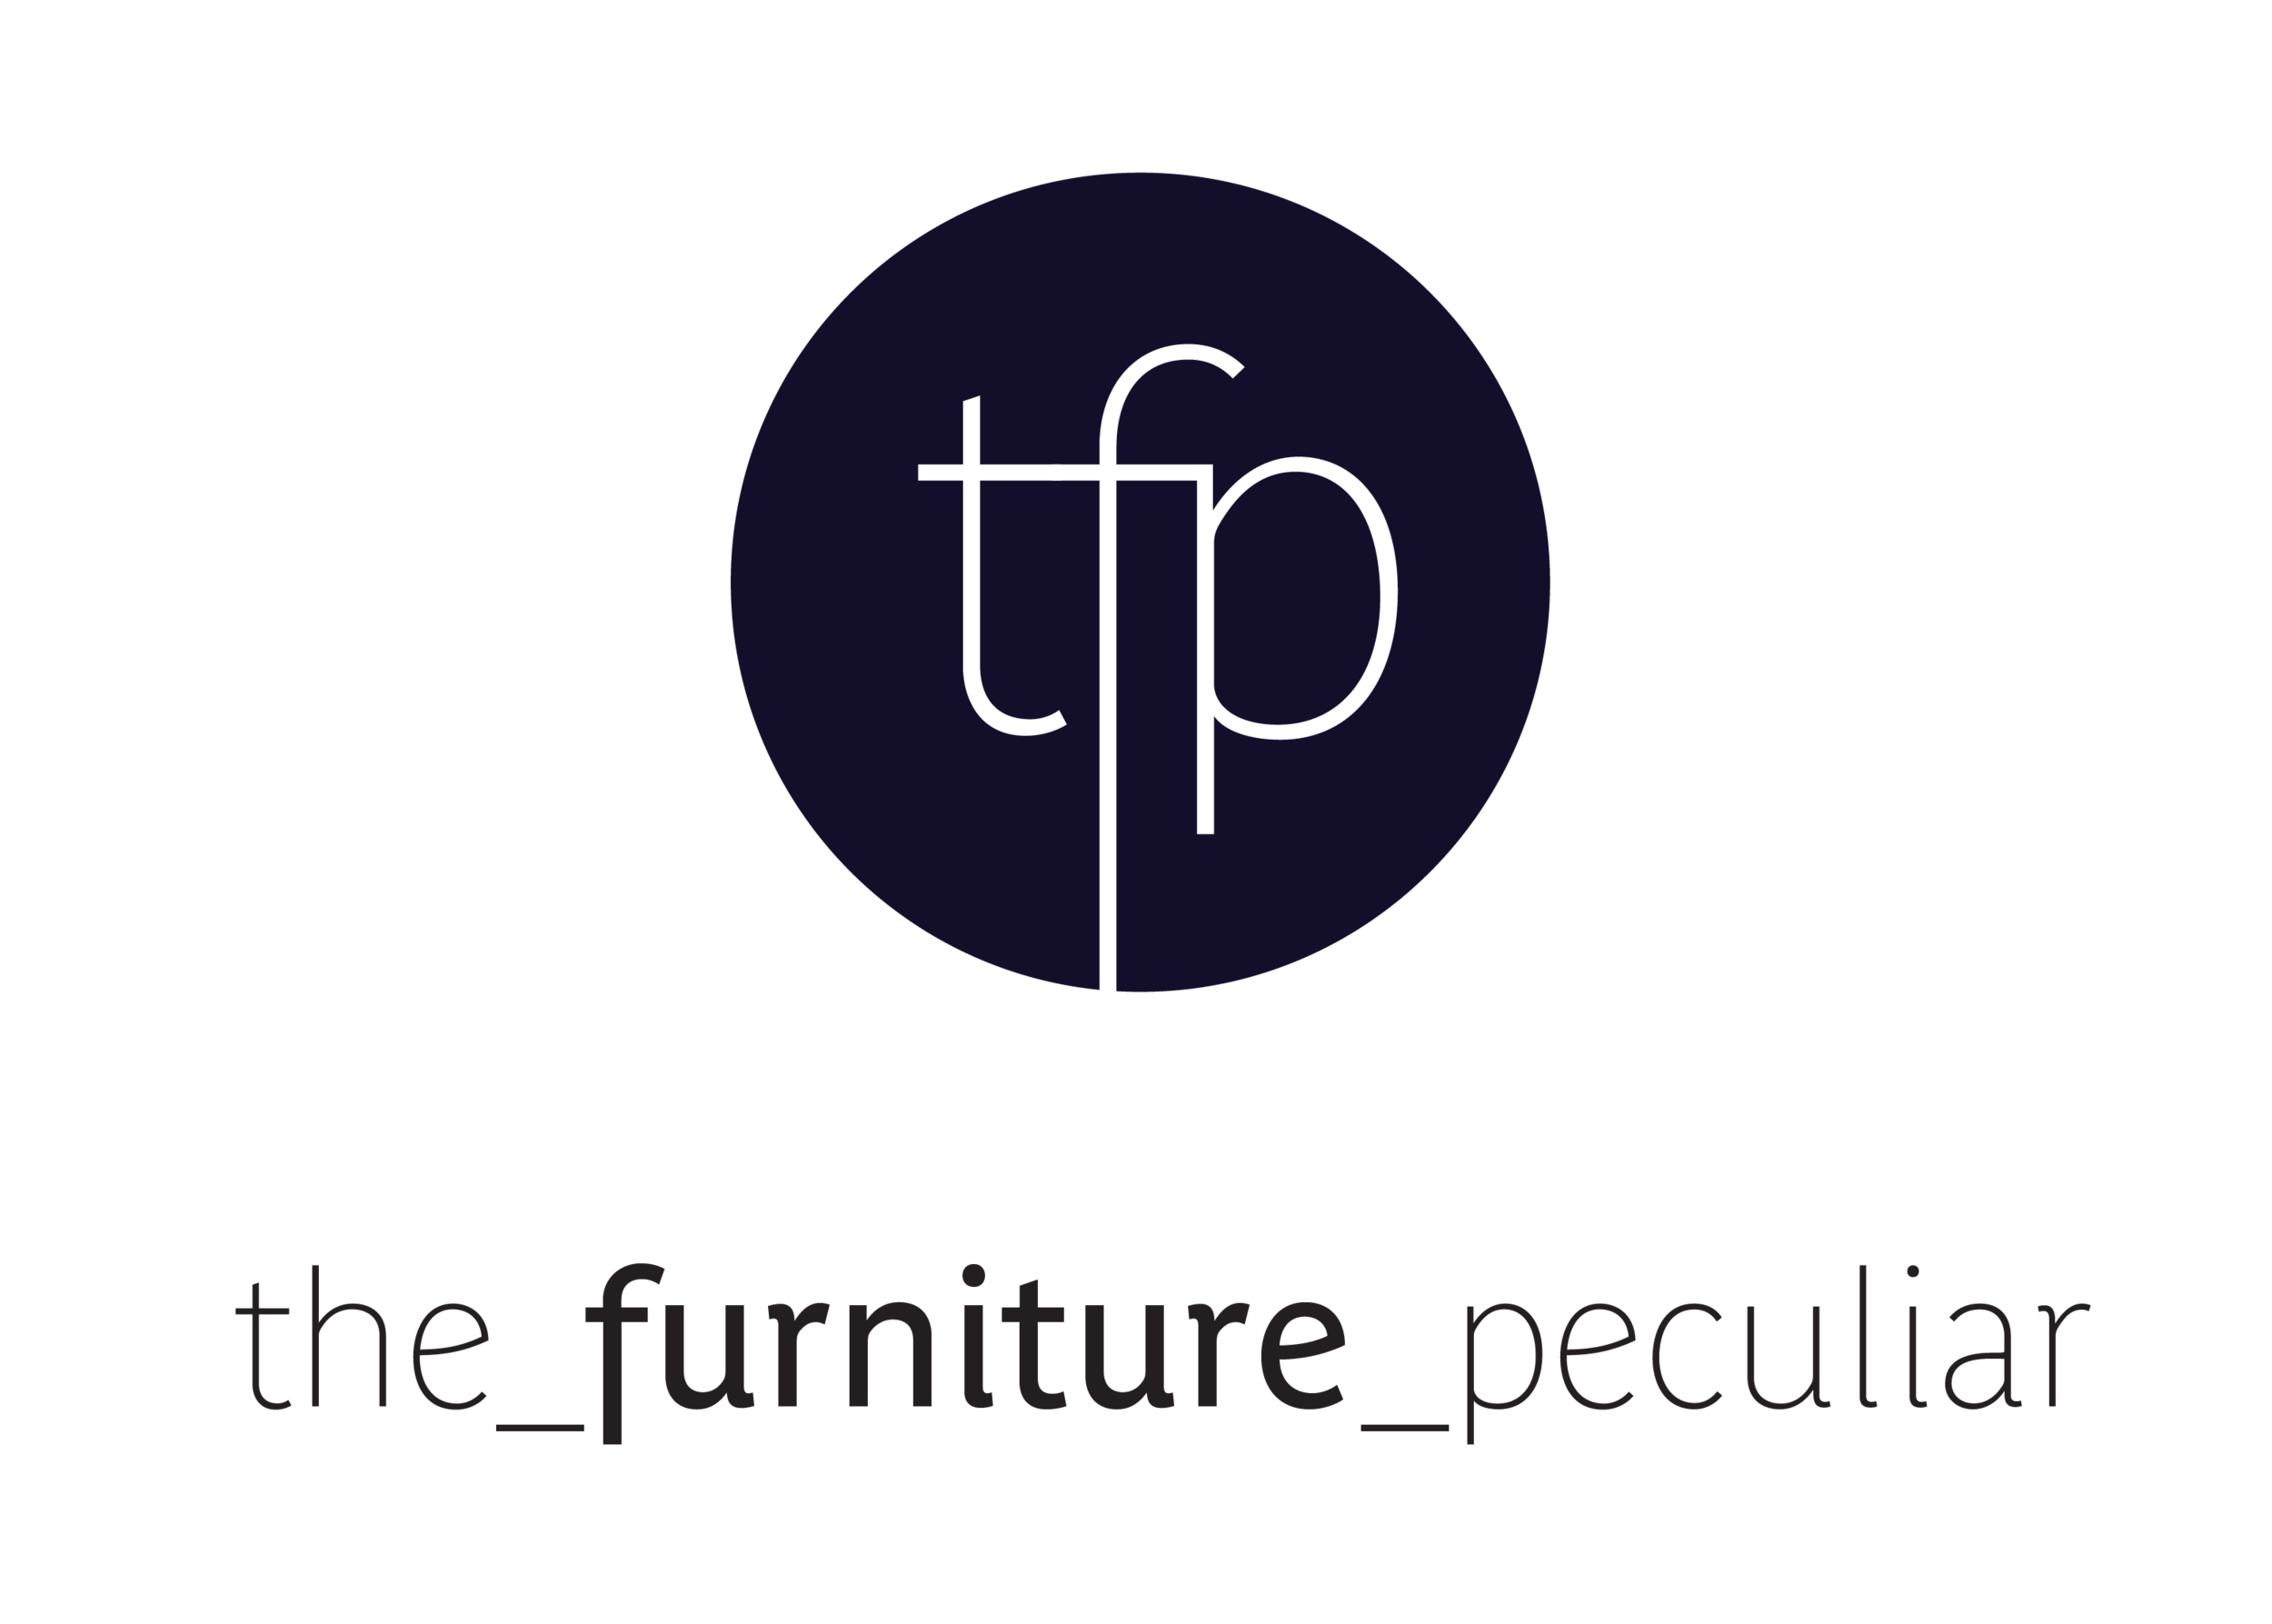 the_furniture_peculiar